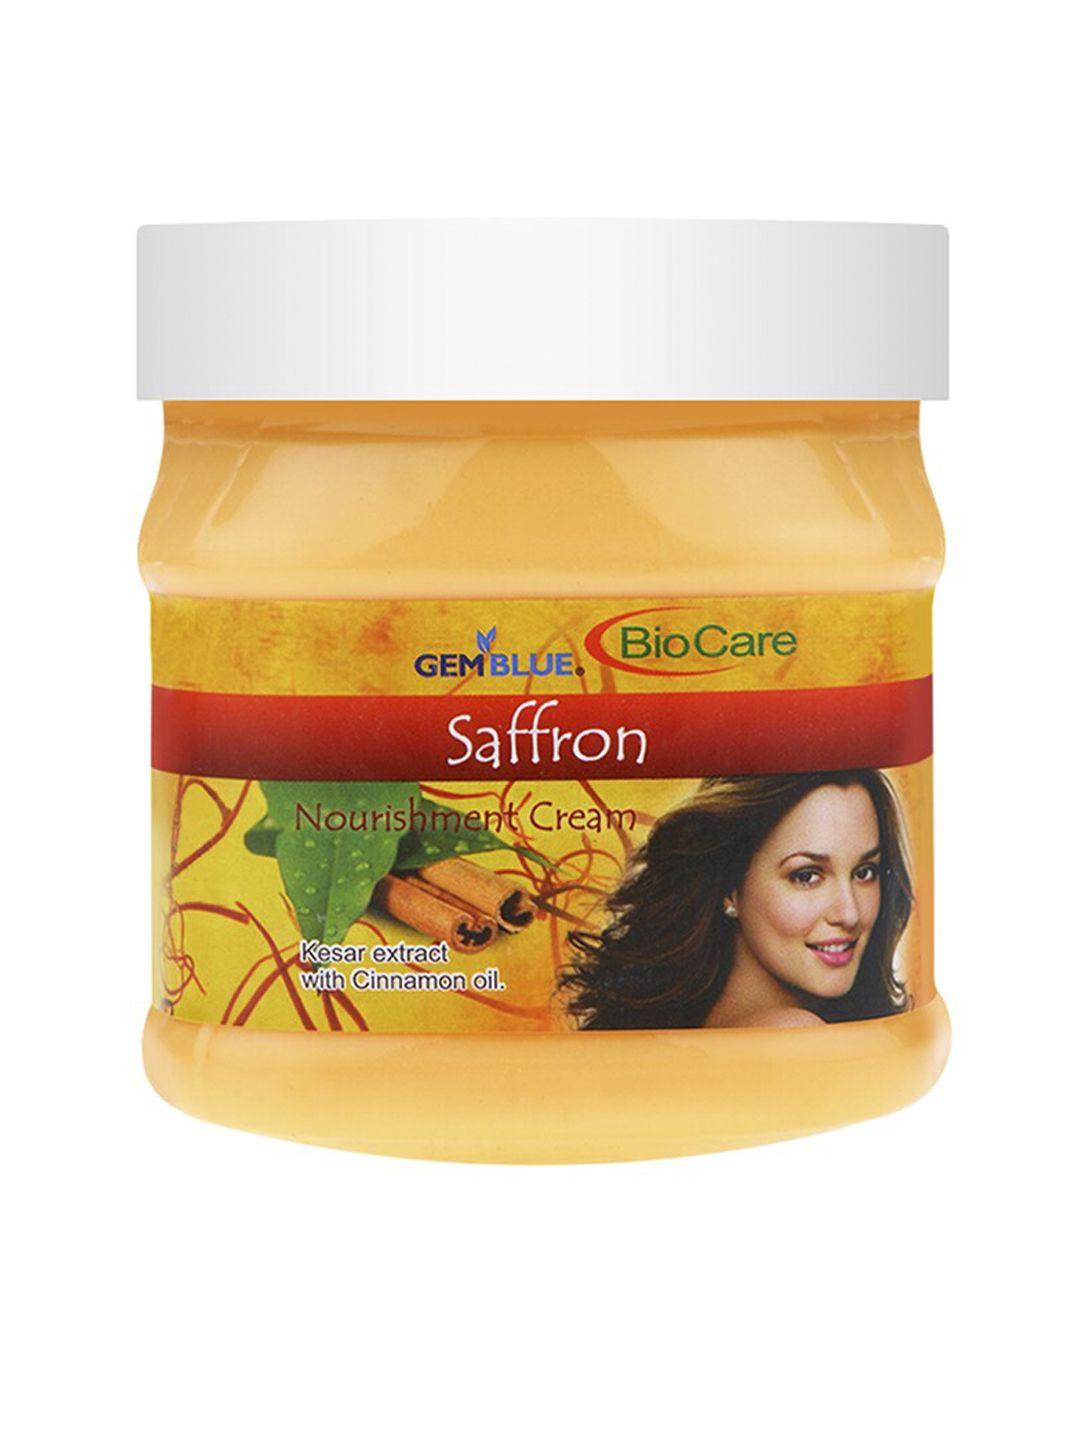 gemblue-biocare-saffron-nourishment-face-&-body-cream-500ml